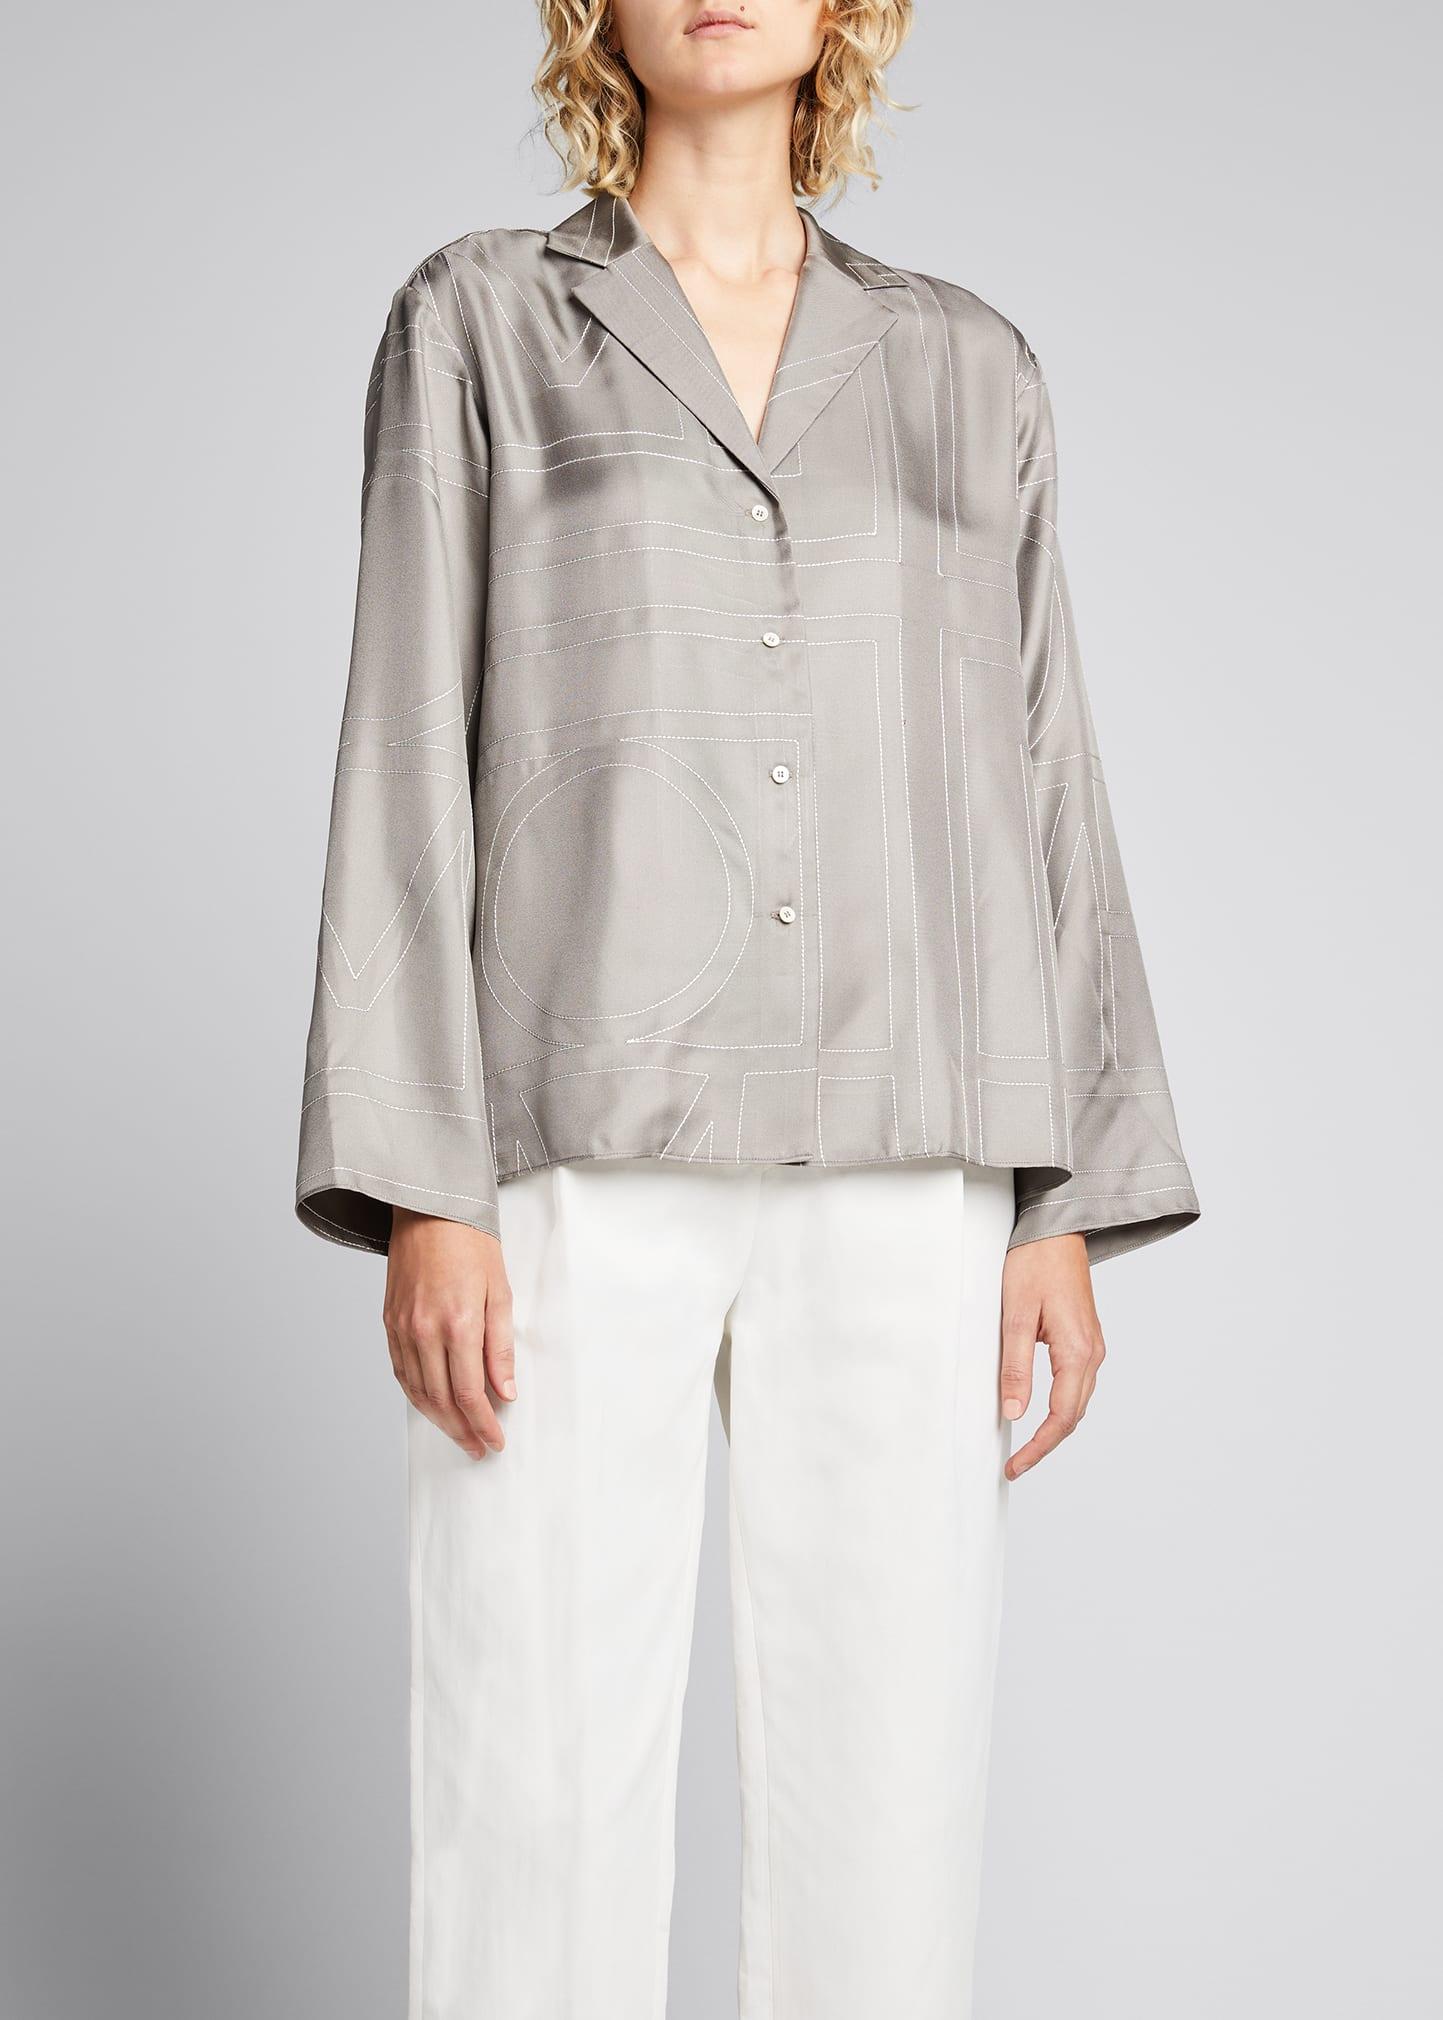 TOTEME Monogram Silk Pajama Top